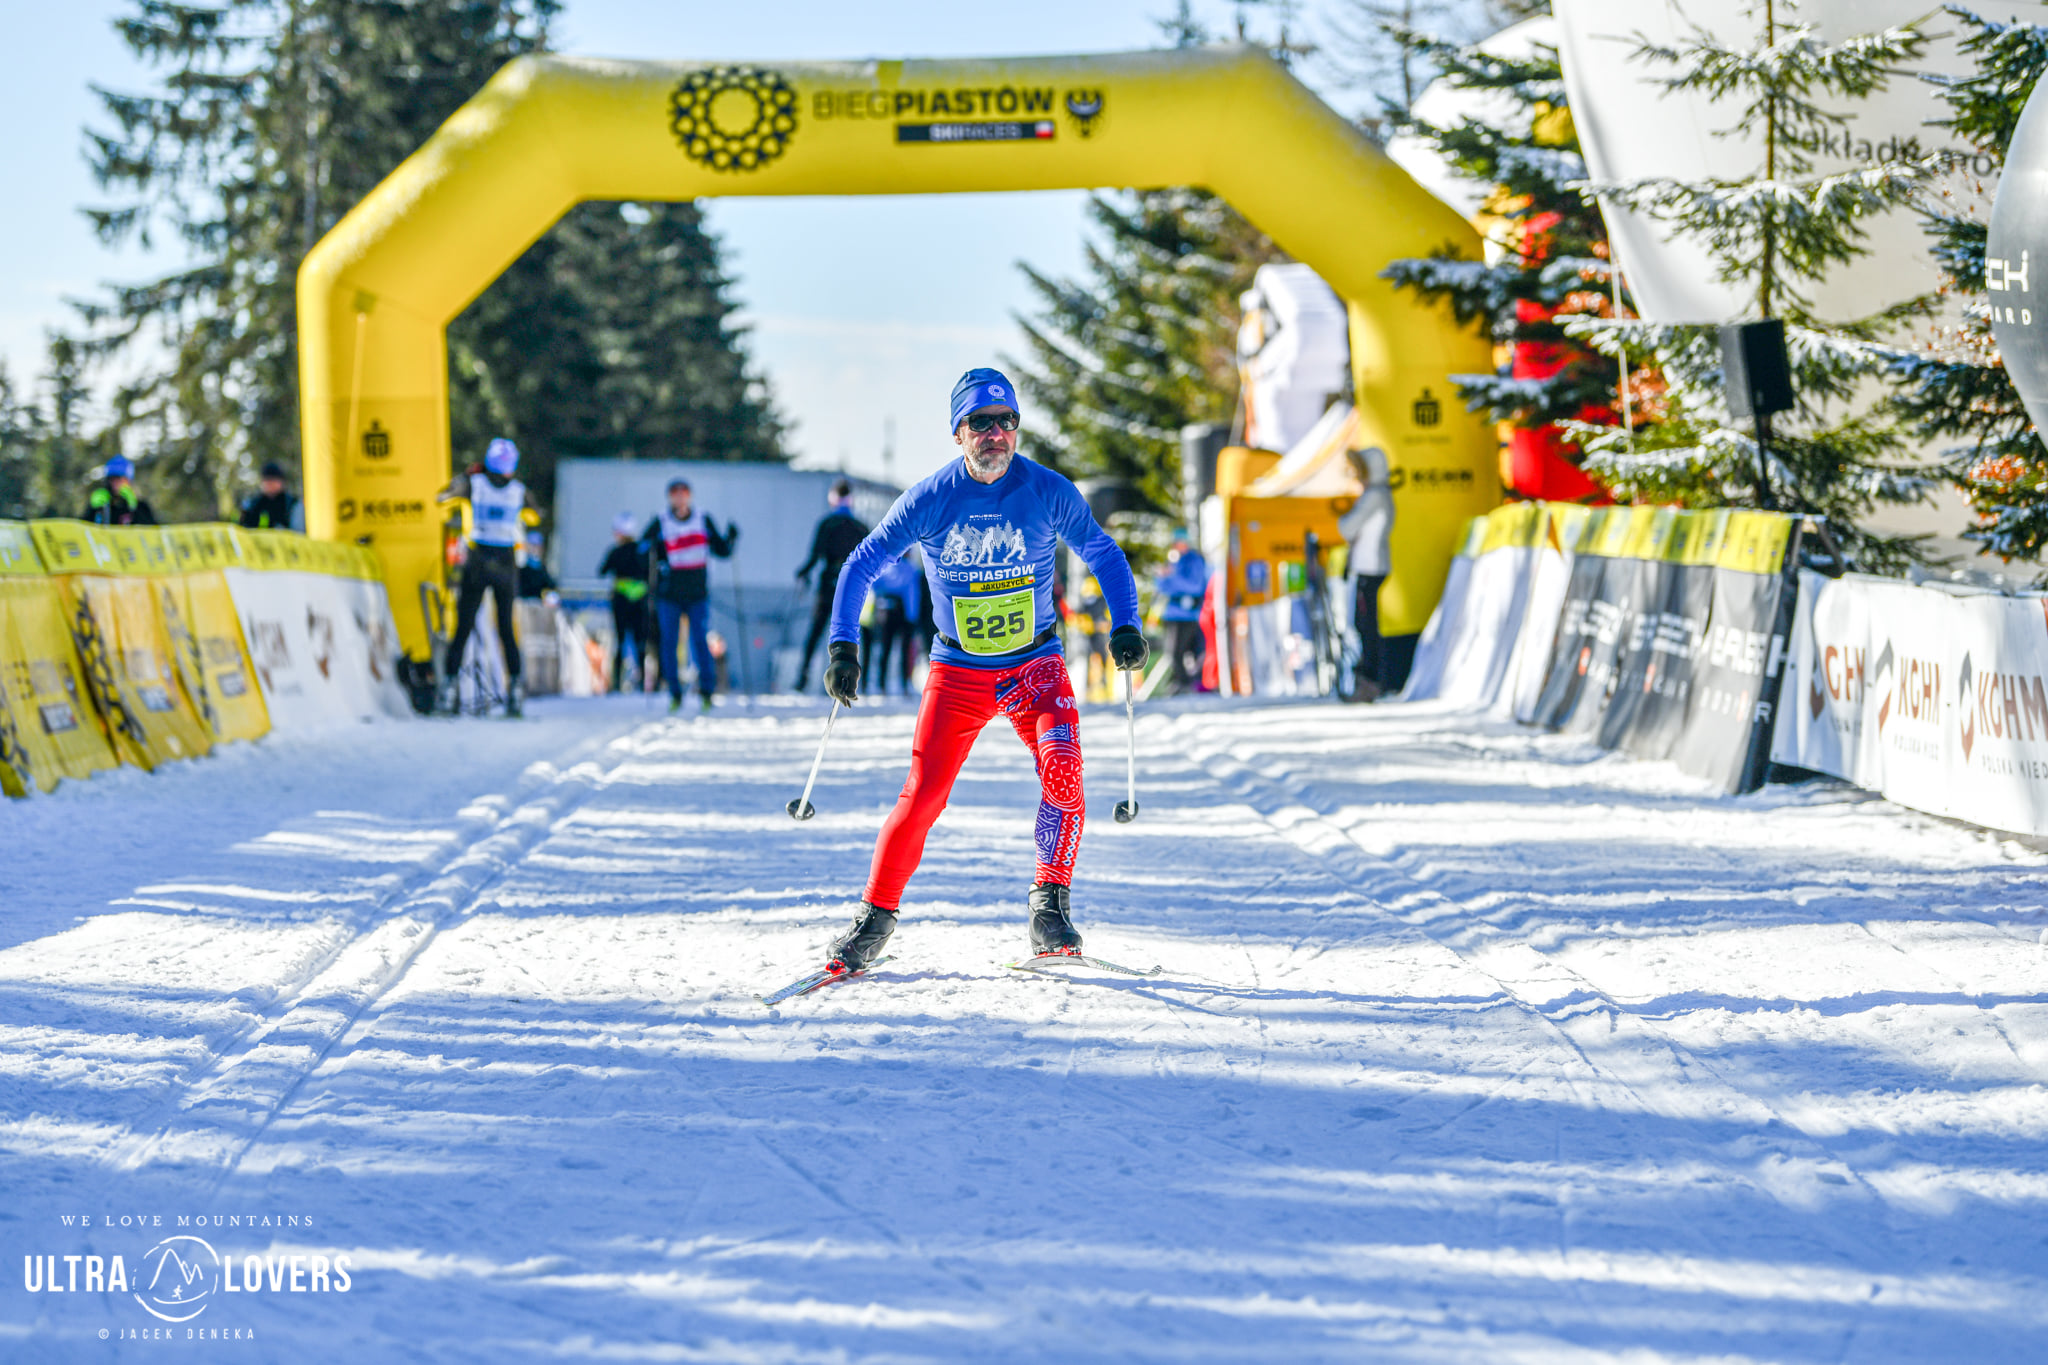 Memoriał Stanisława Michonia w niedzielę 27 lutego - biegacze narciarscy na trasie 15-kilometrowego biegu